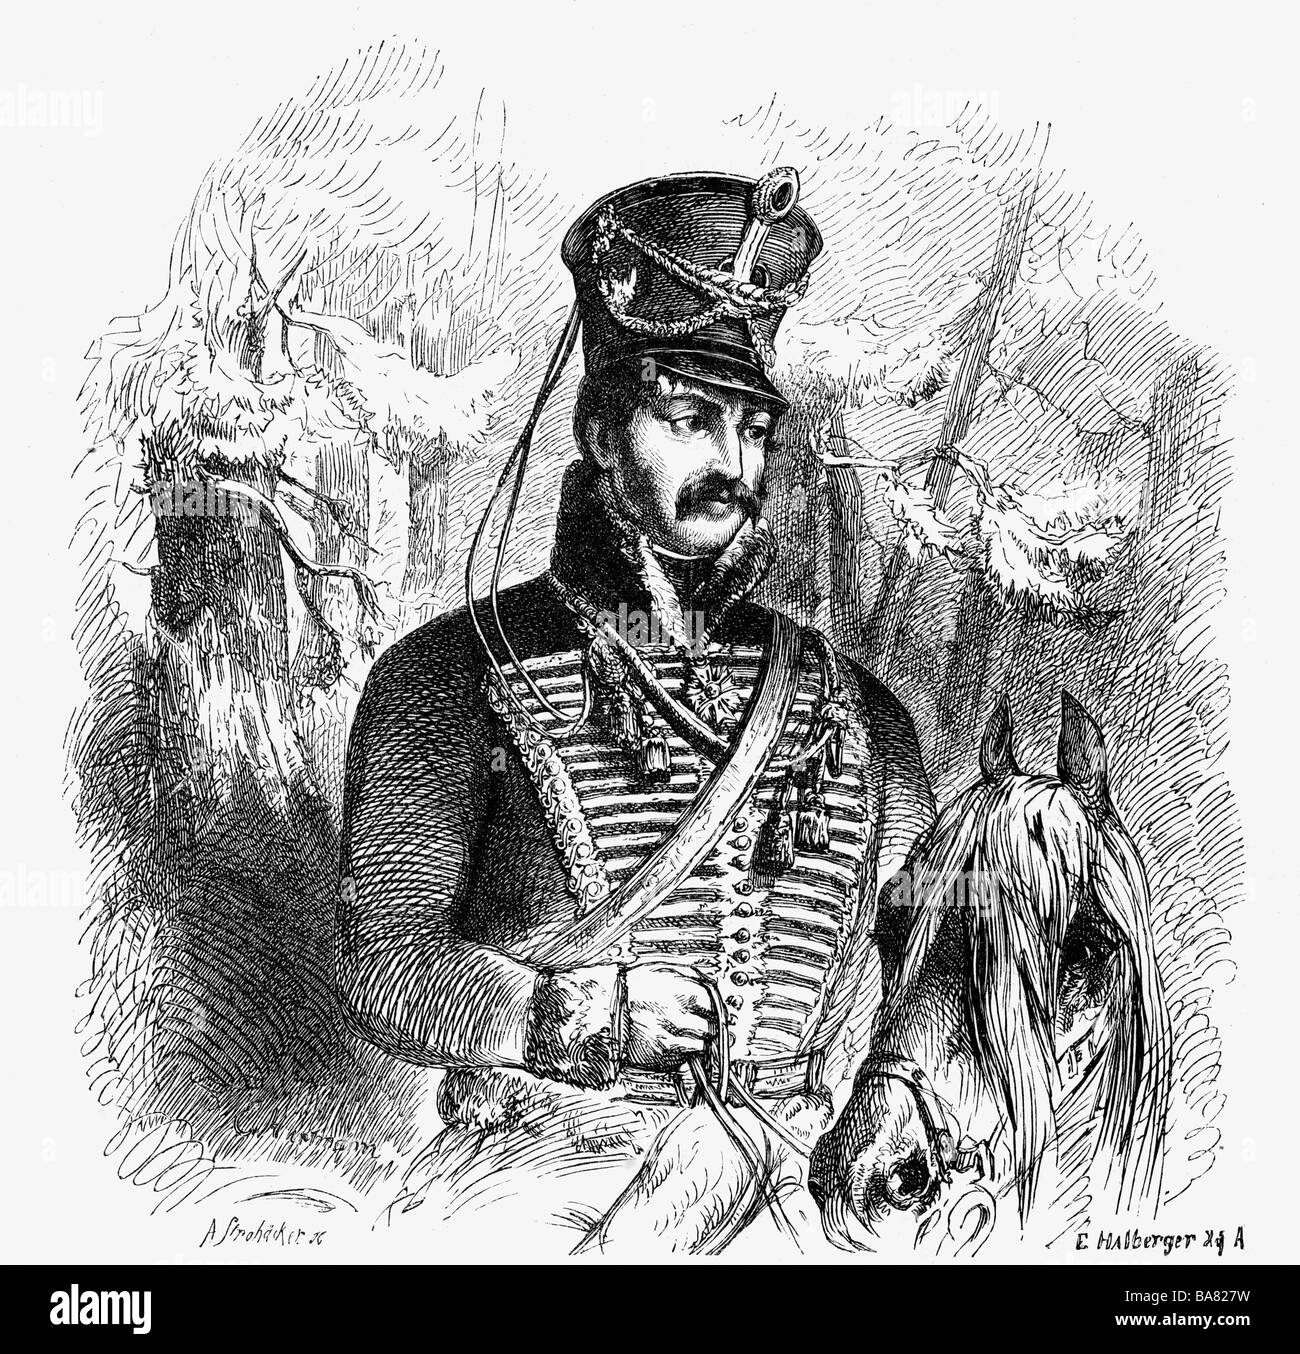 Schill, Ferdinand von, 6.1.1776 - 31.5.1809, officier militaire prussien, demi-longueur, gravure en bois, XIXe siècle, Banque D'Images